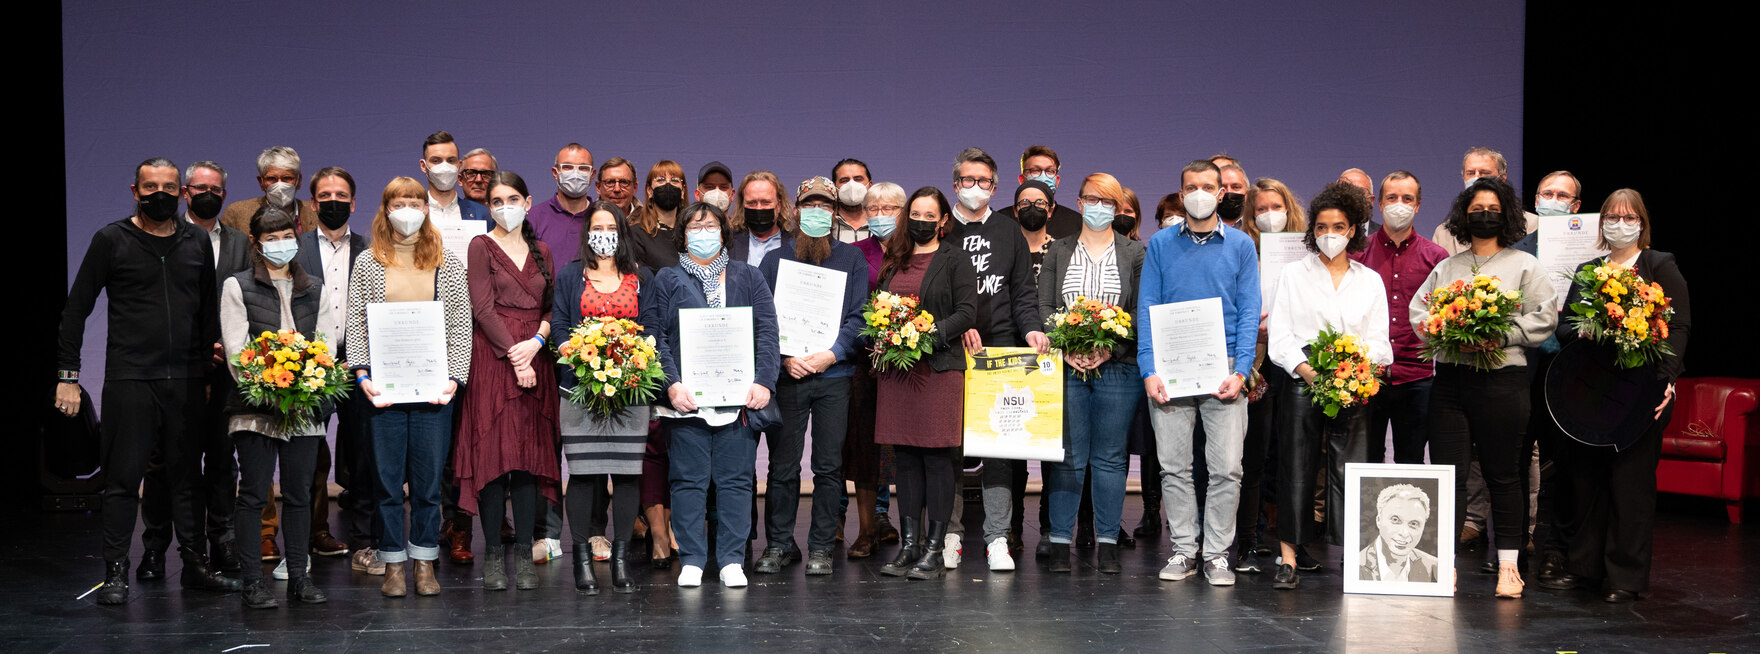 Das Bild zeigt alle Presträgerinnen und Preisträger des Sächsischen Förderpreises für Demokratie sowie die Mitglieder der Jury